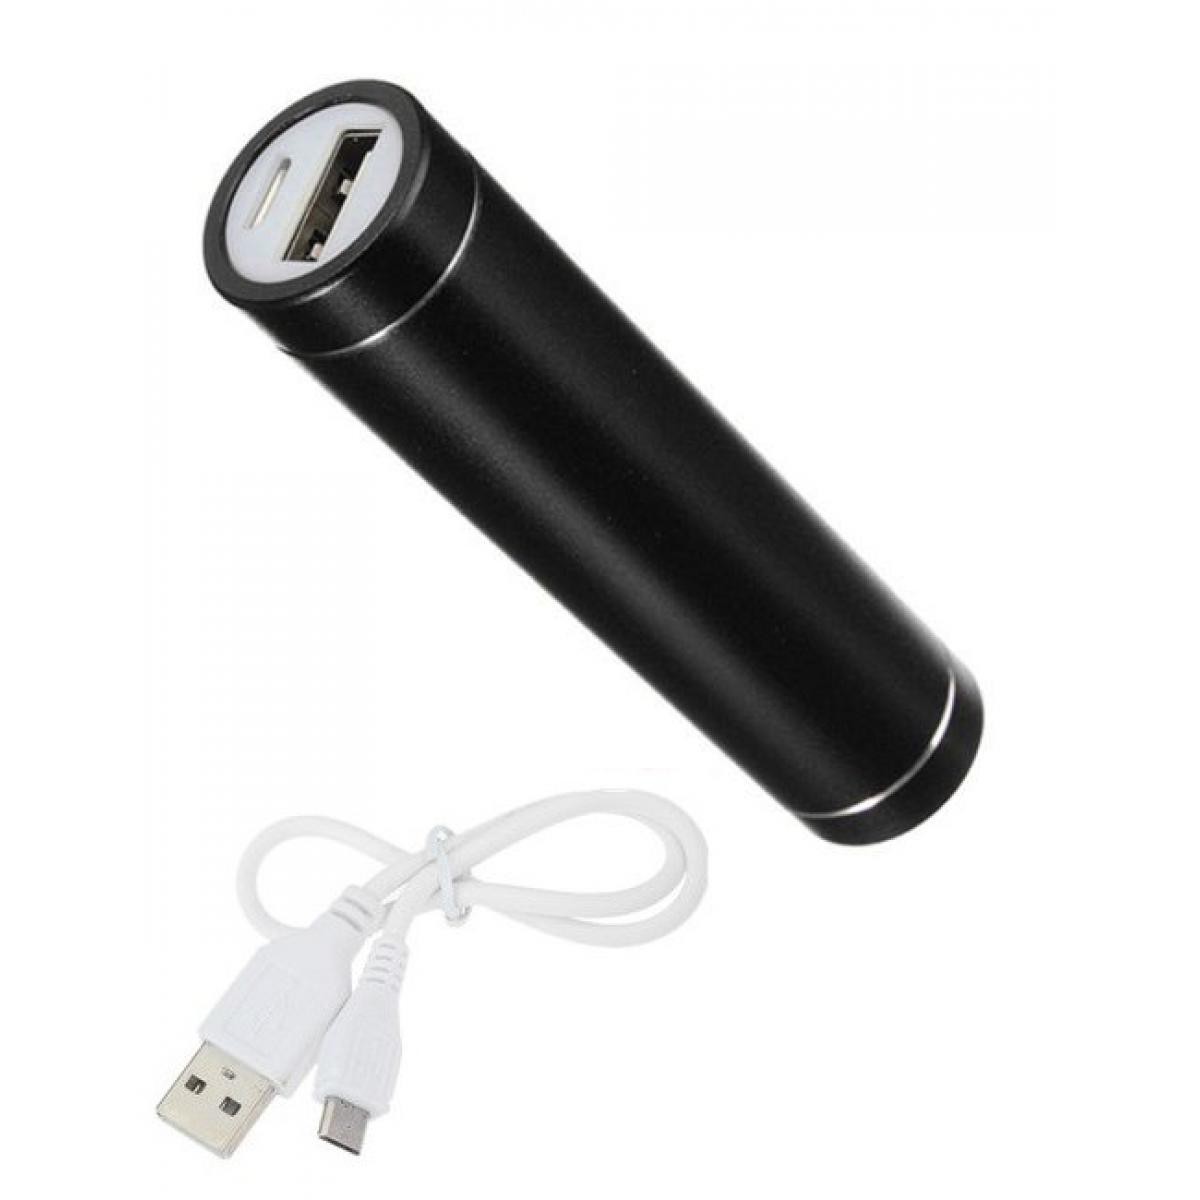 Shot - Batterie Chargeur Externe pour XIAOMI Mi 9T Power Bank 2600mAh avec Cable USB/Mirco USB Secours Telephone (NOIR) - Chargeur secteur téléphone